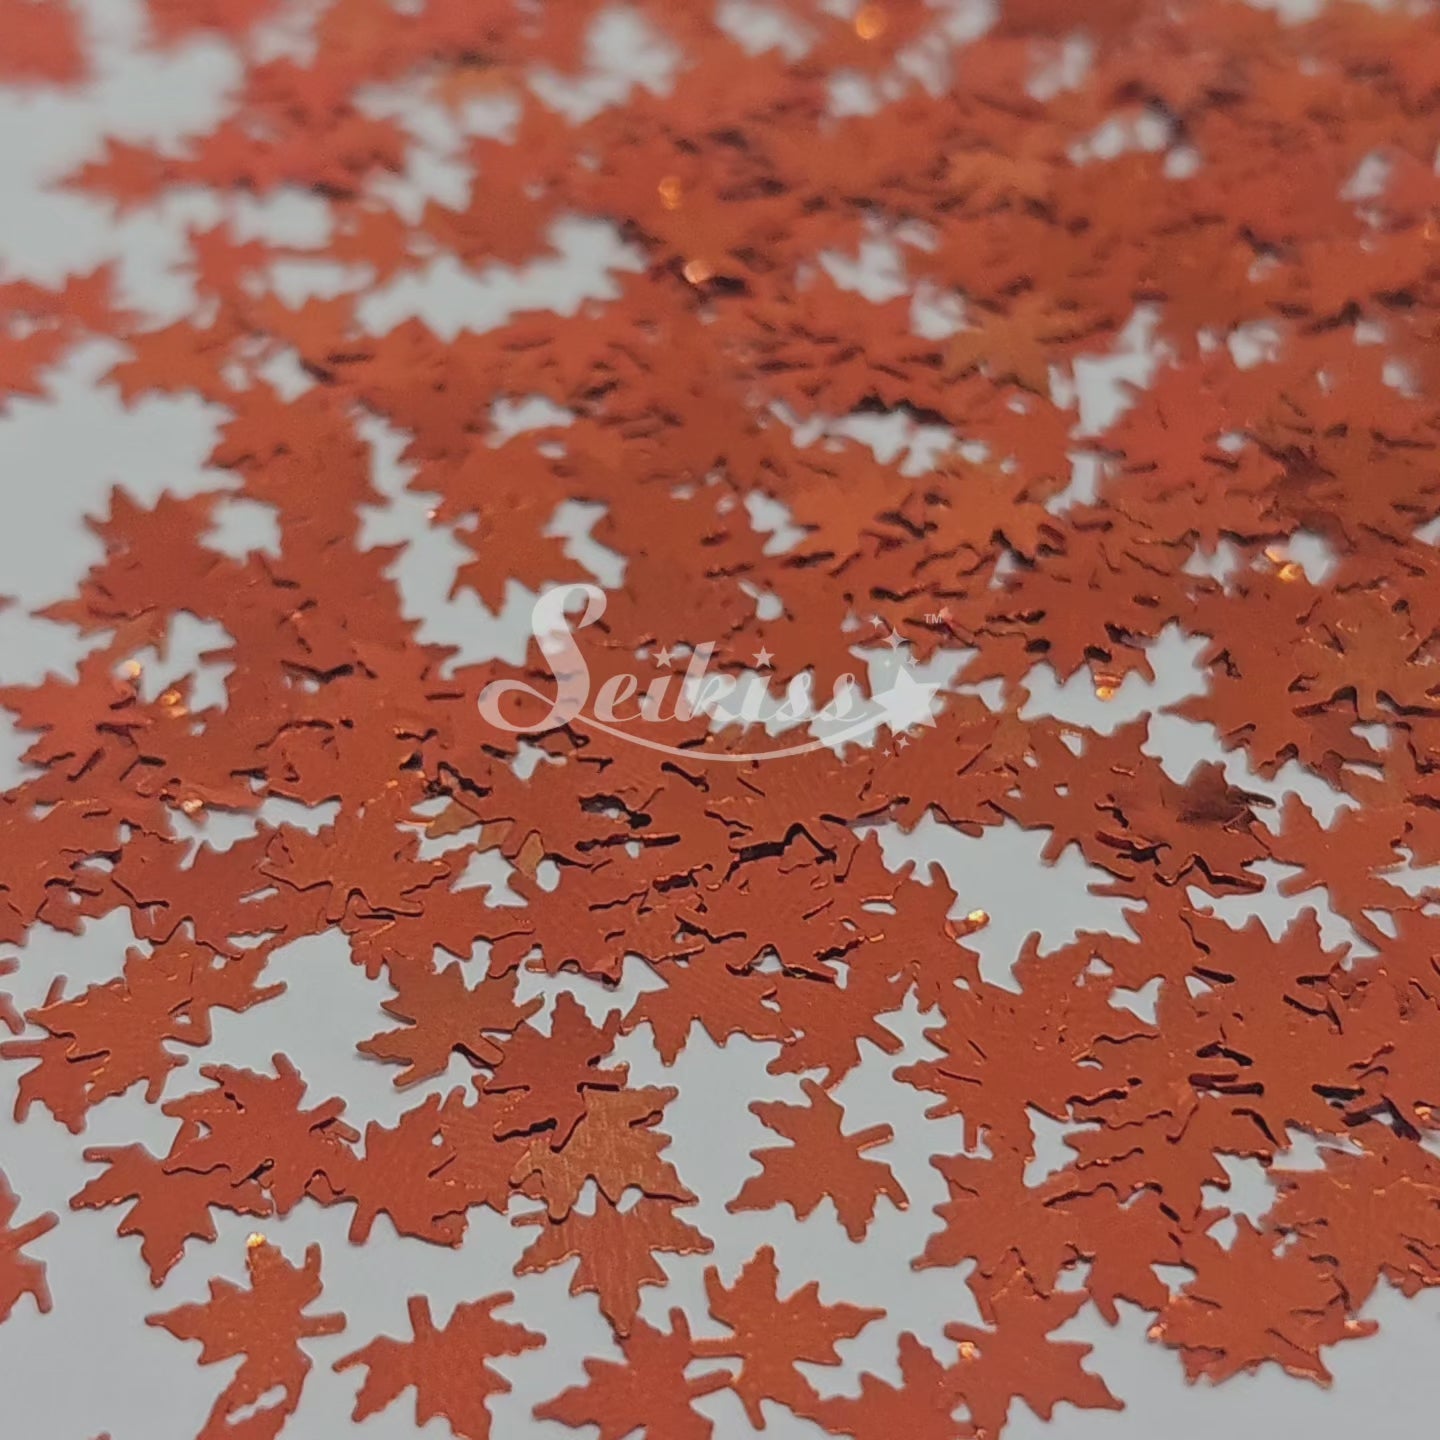 Copper Autumn Leaf Shape Glitter - Brown Glitter